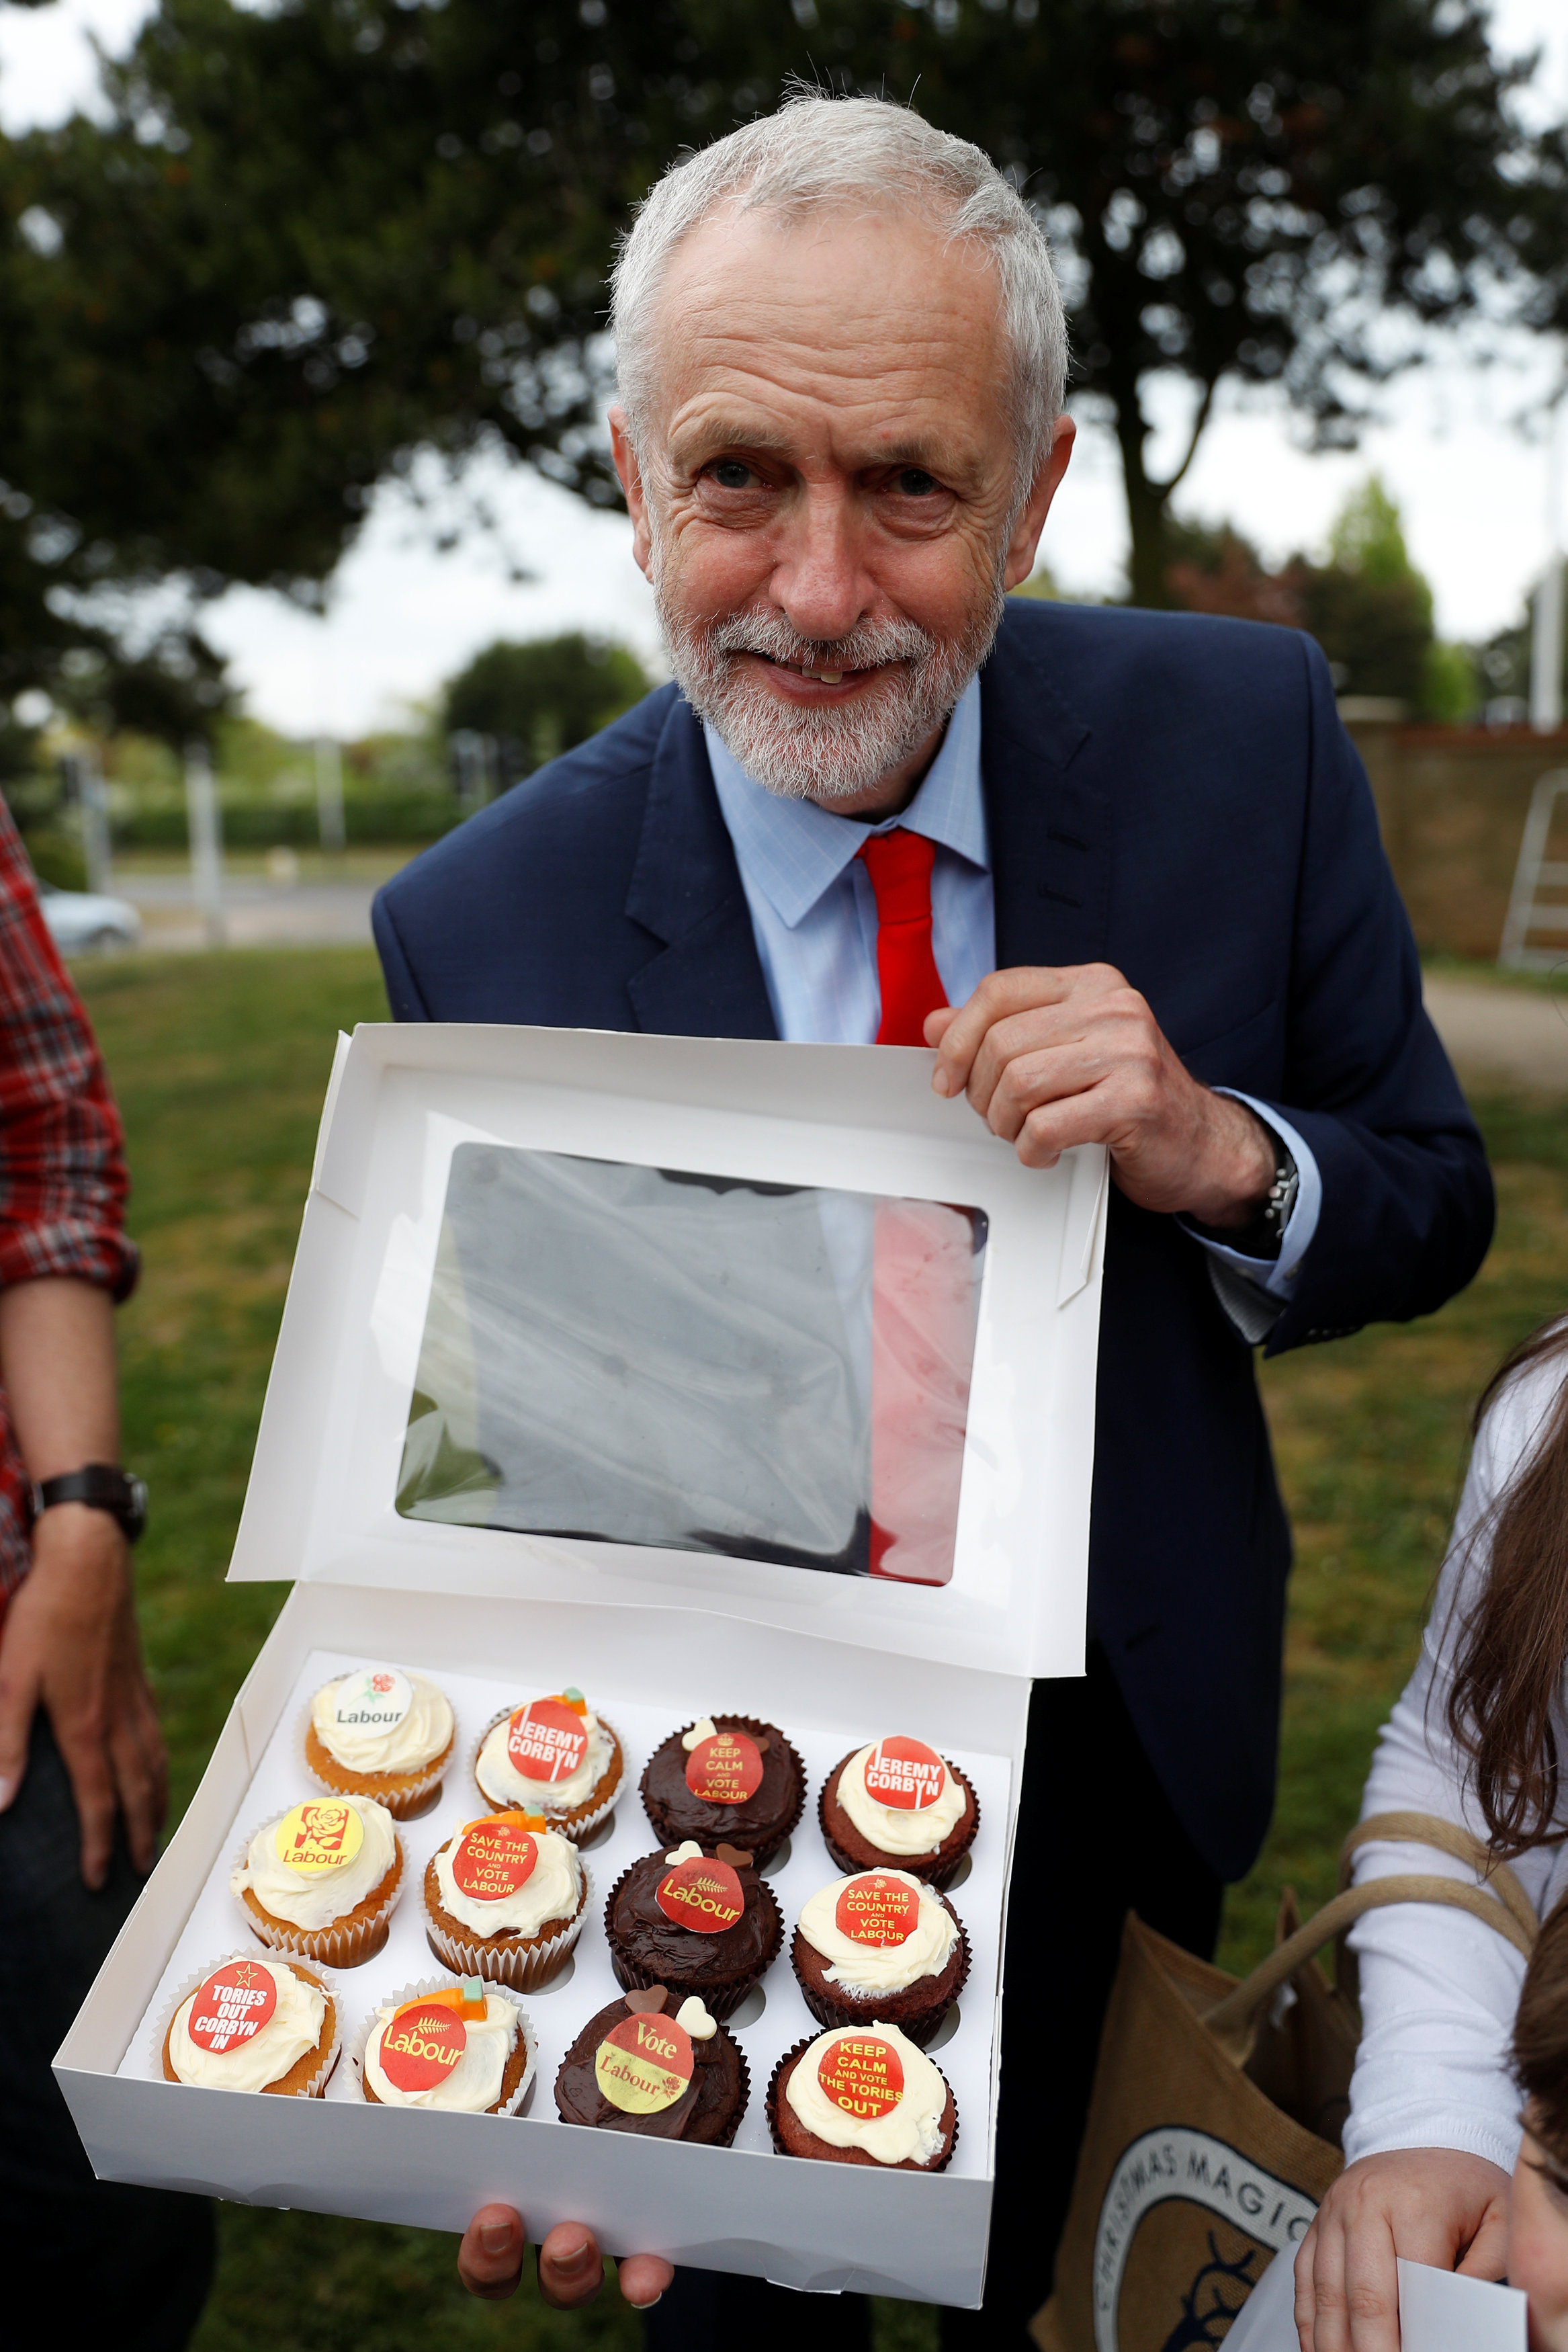 زعيم حزب العمل البريطانى يوزع الحلوى على أعضاء الحزب